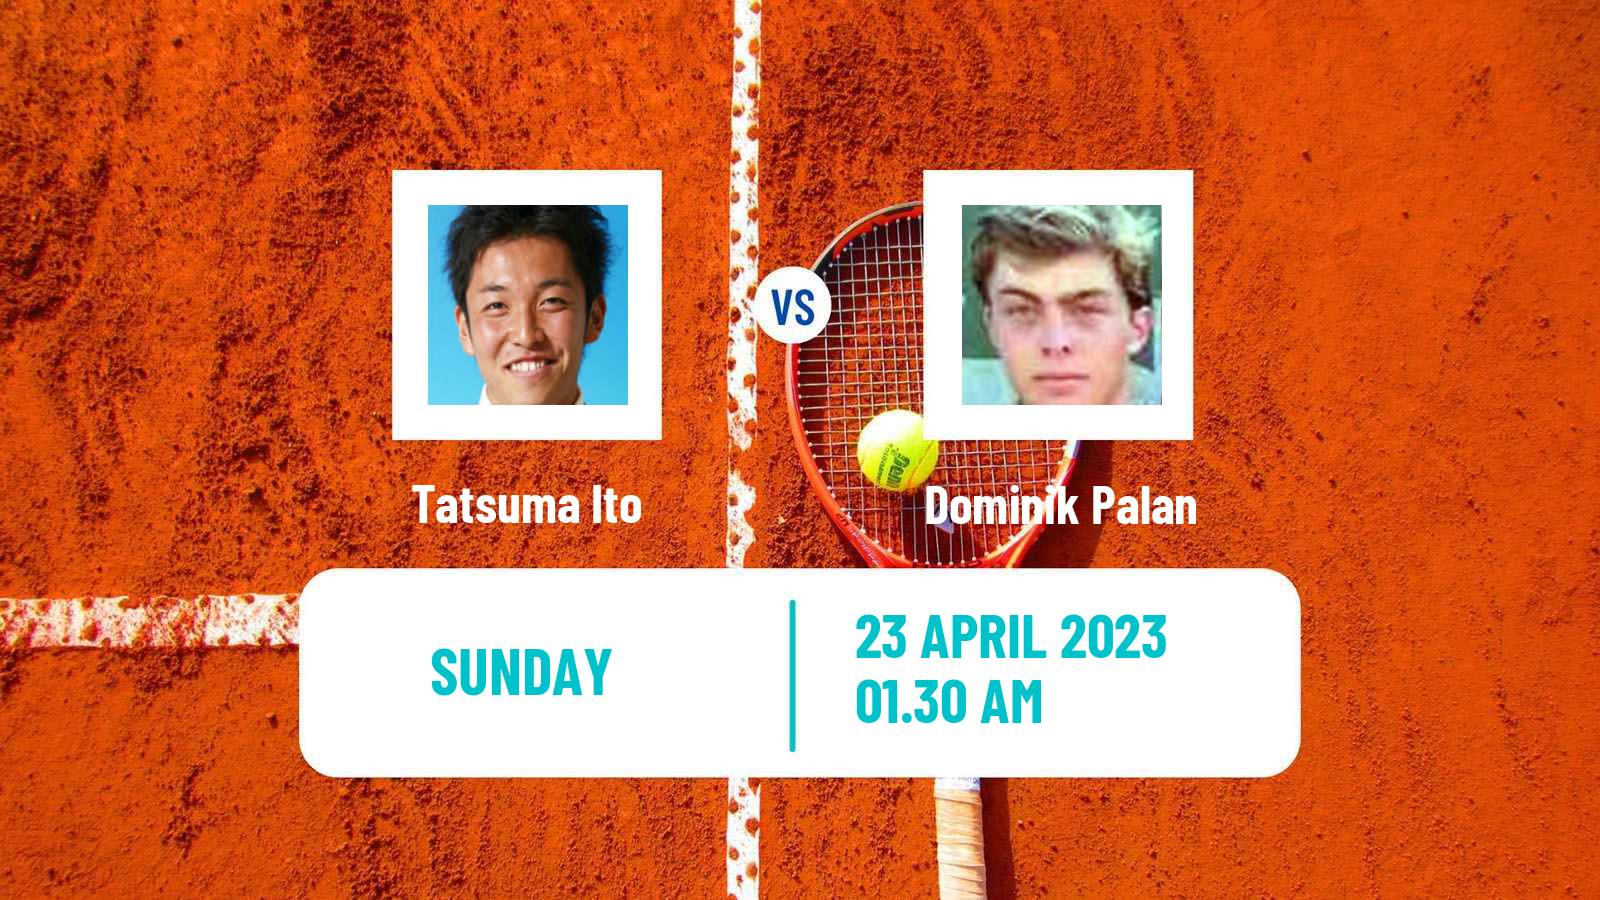 Tennis ATP Challenger Tatsuma Ito - Dominik Palan